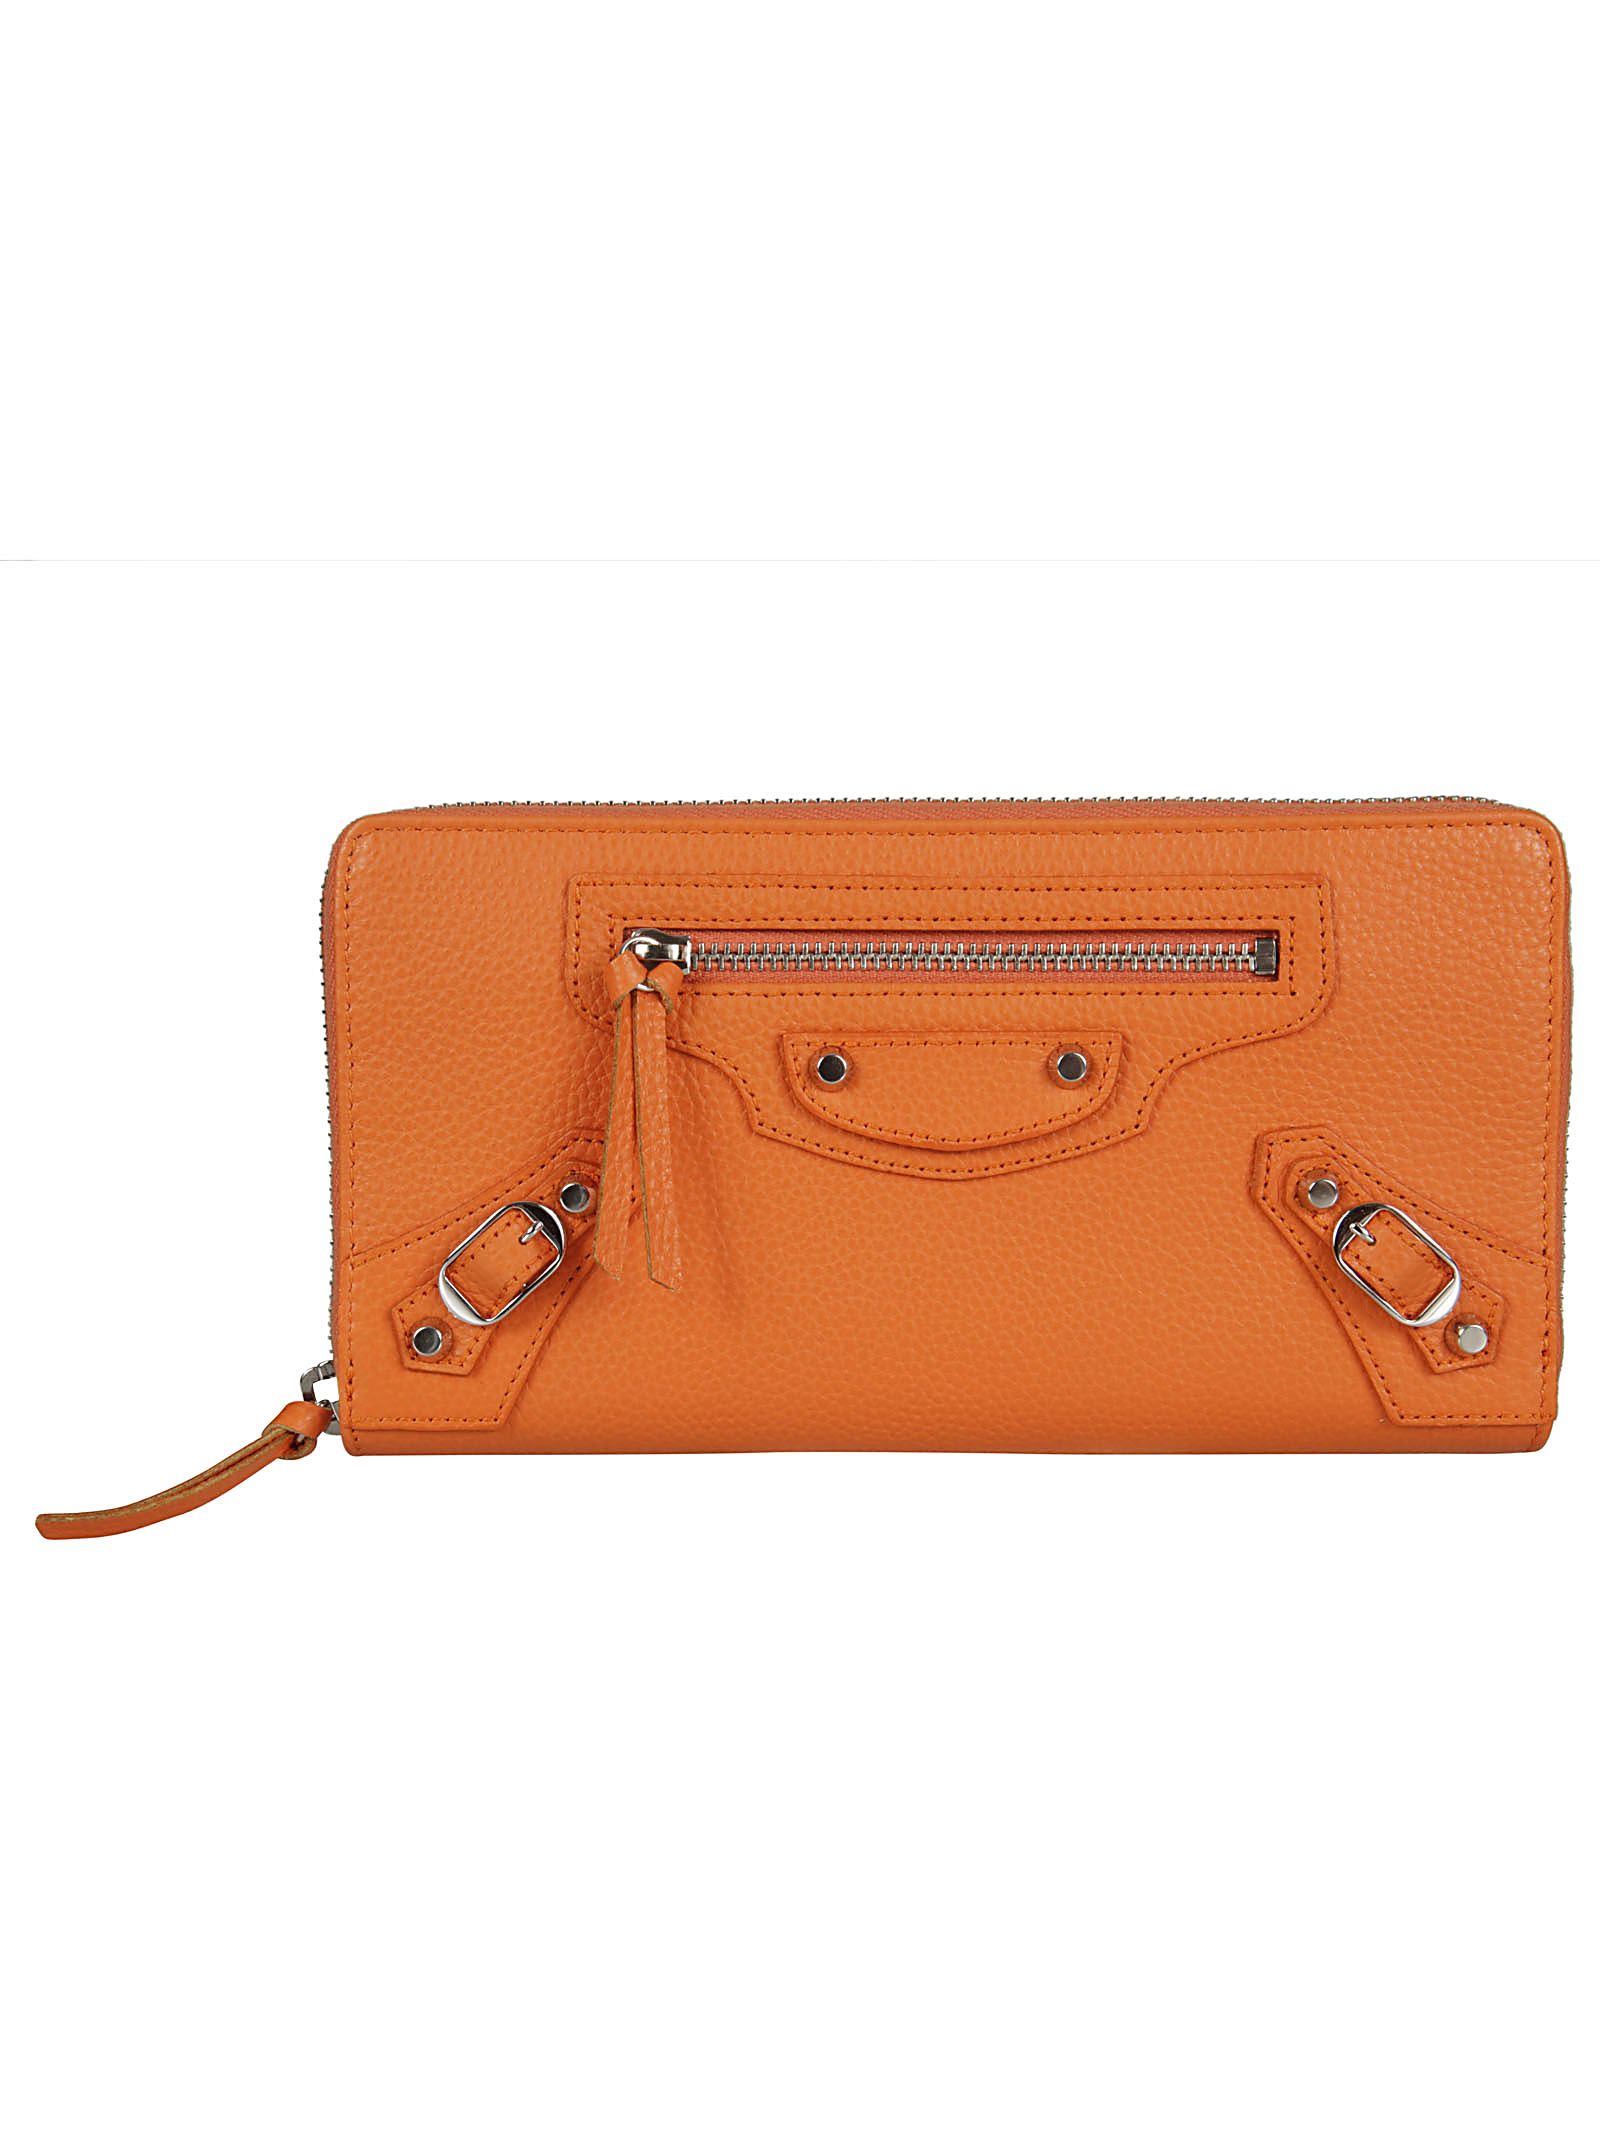 Balenciaga - Balenciaga Classic Zip Around Wallet - Orange, Women's